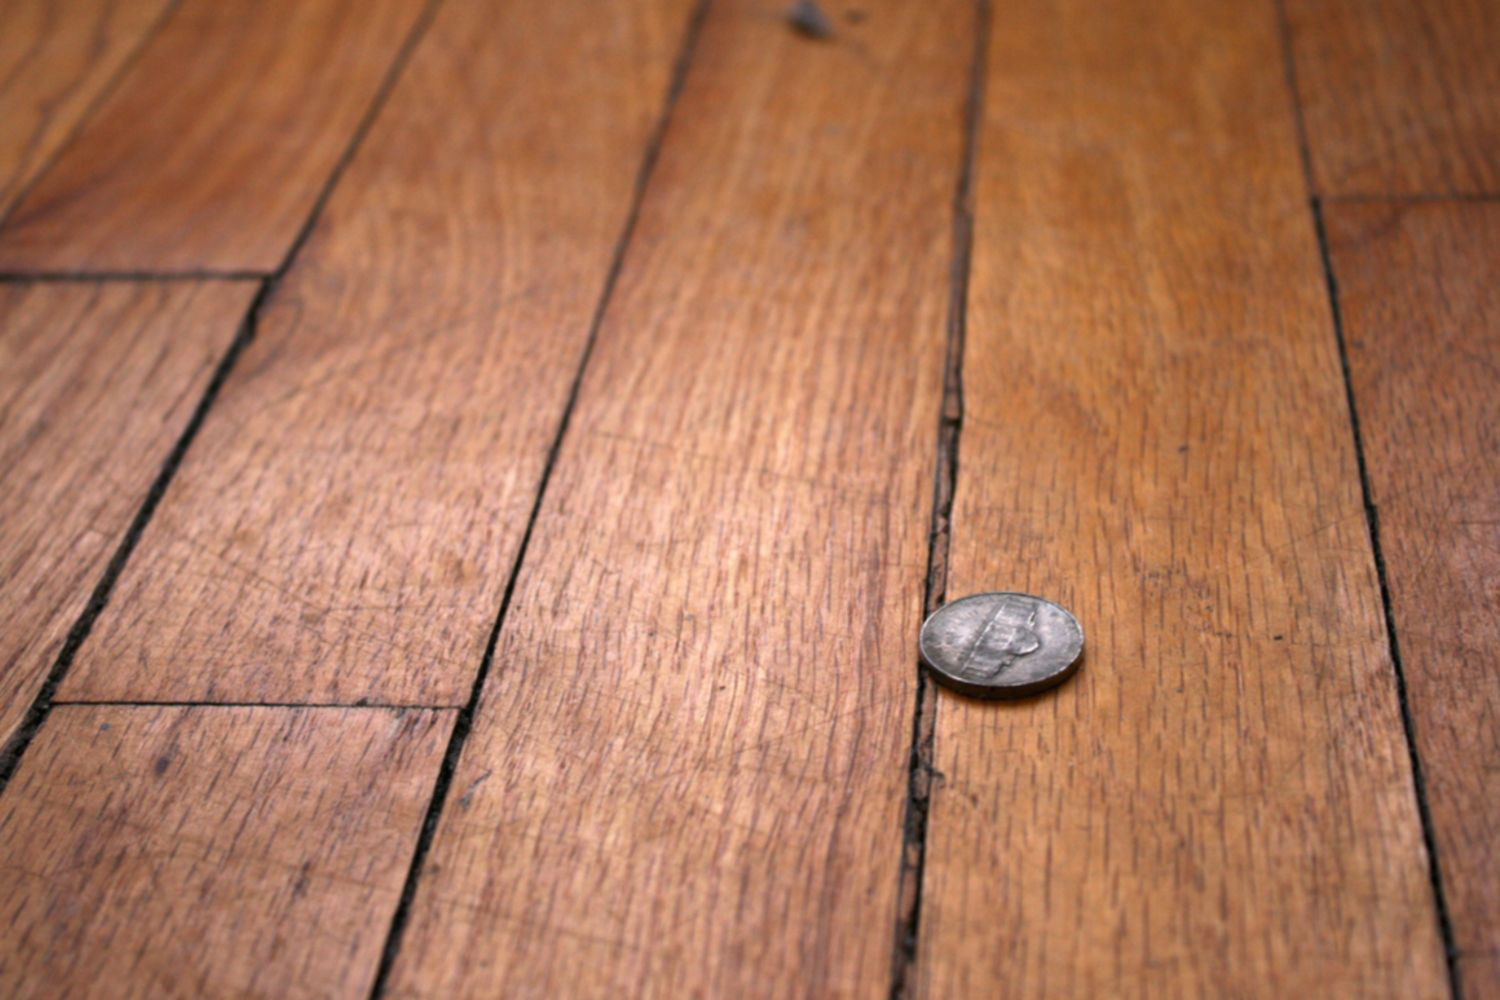 Reusing Old Hardwood Flooring Of How to Repair Gaps Between Floorboards with Regard to Wood Floor with Gaps Between Boards 1500 X 1000 56a49eb25f9b58b7d0d7df8d